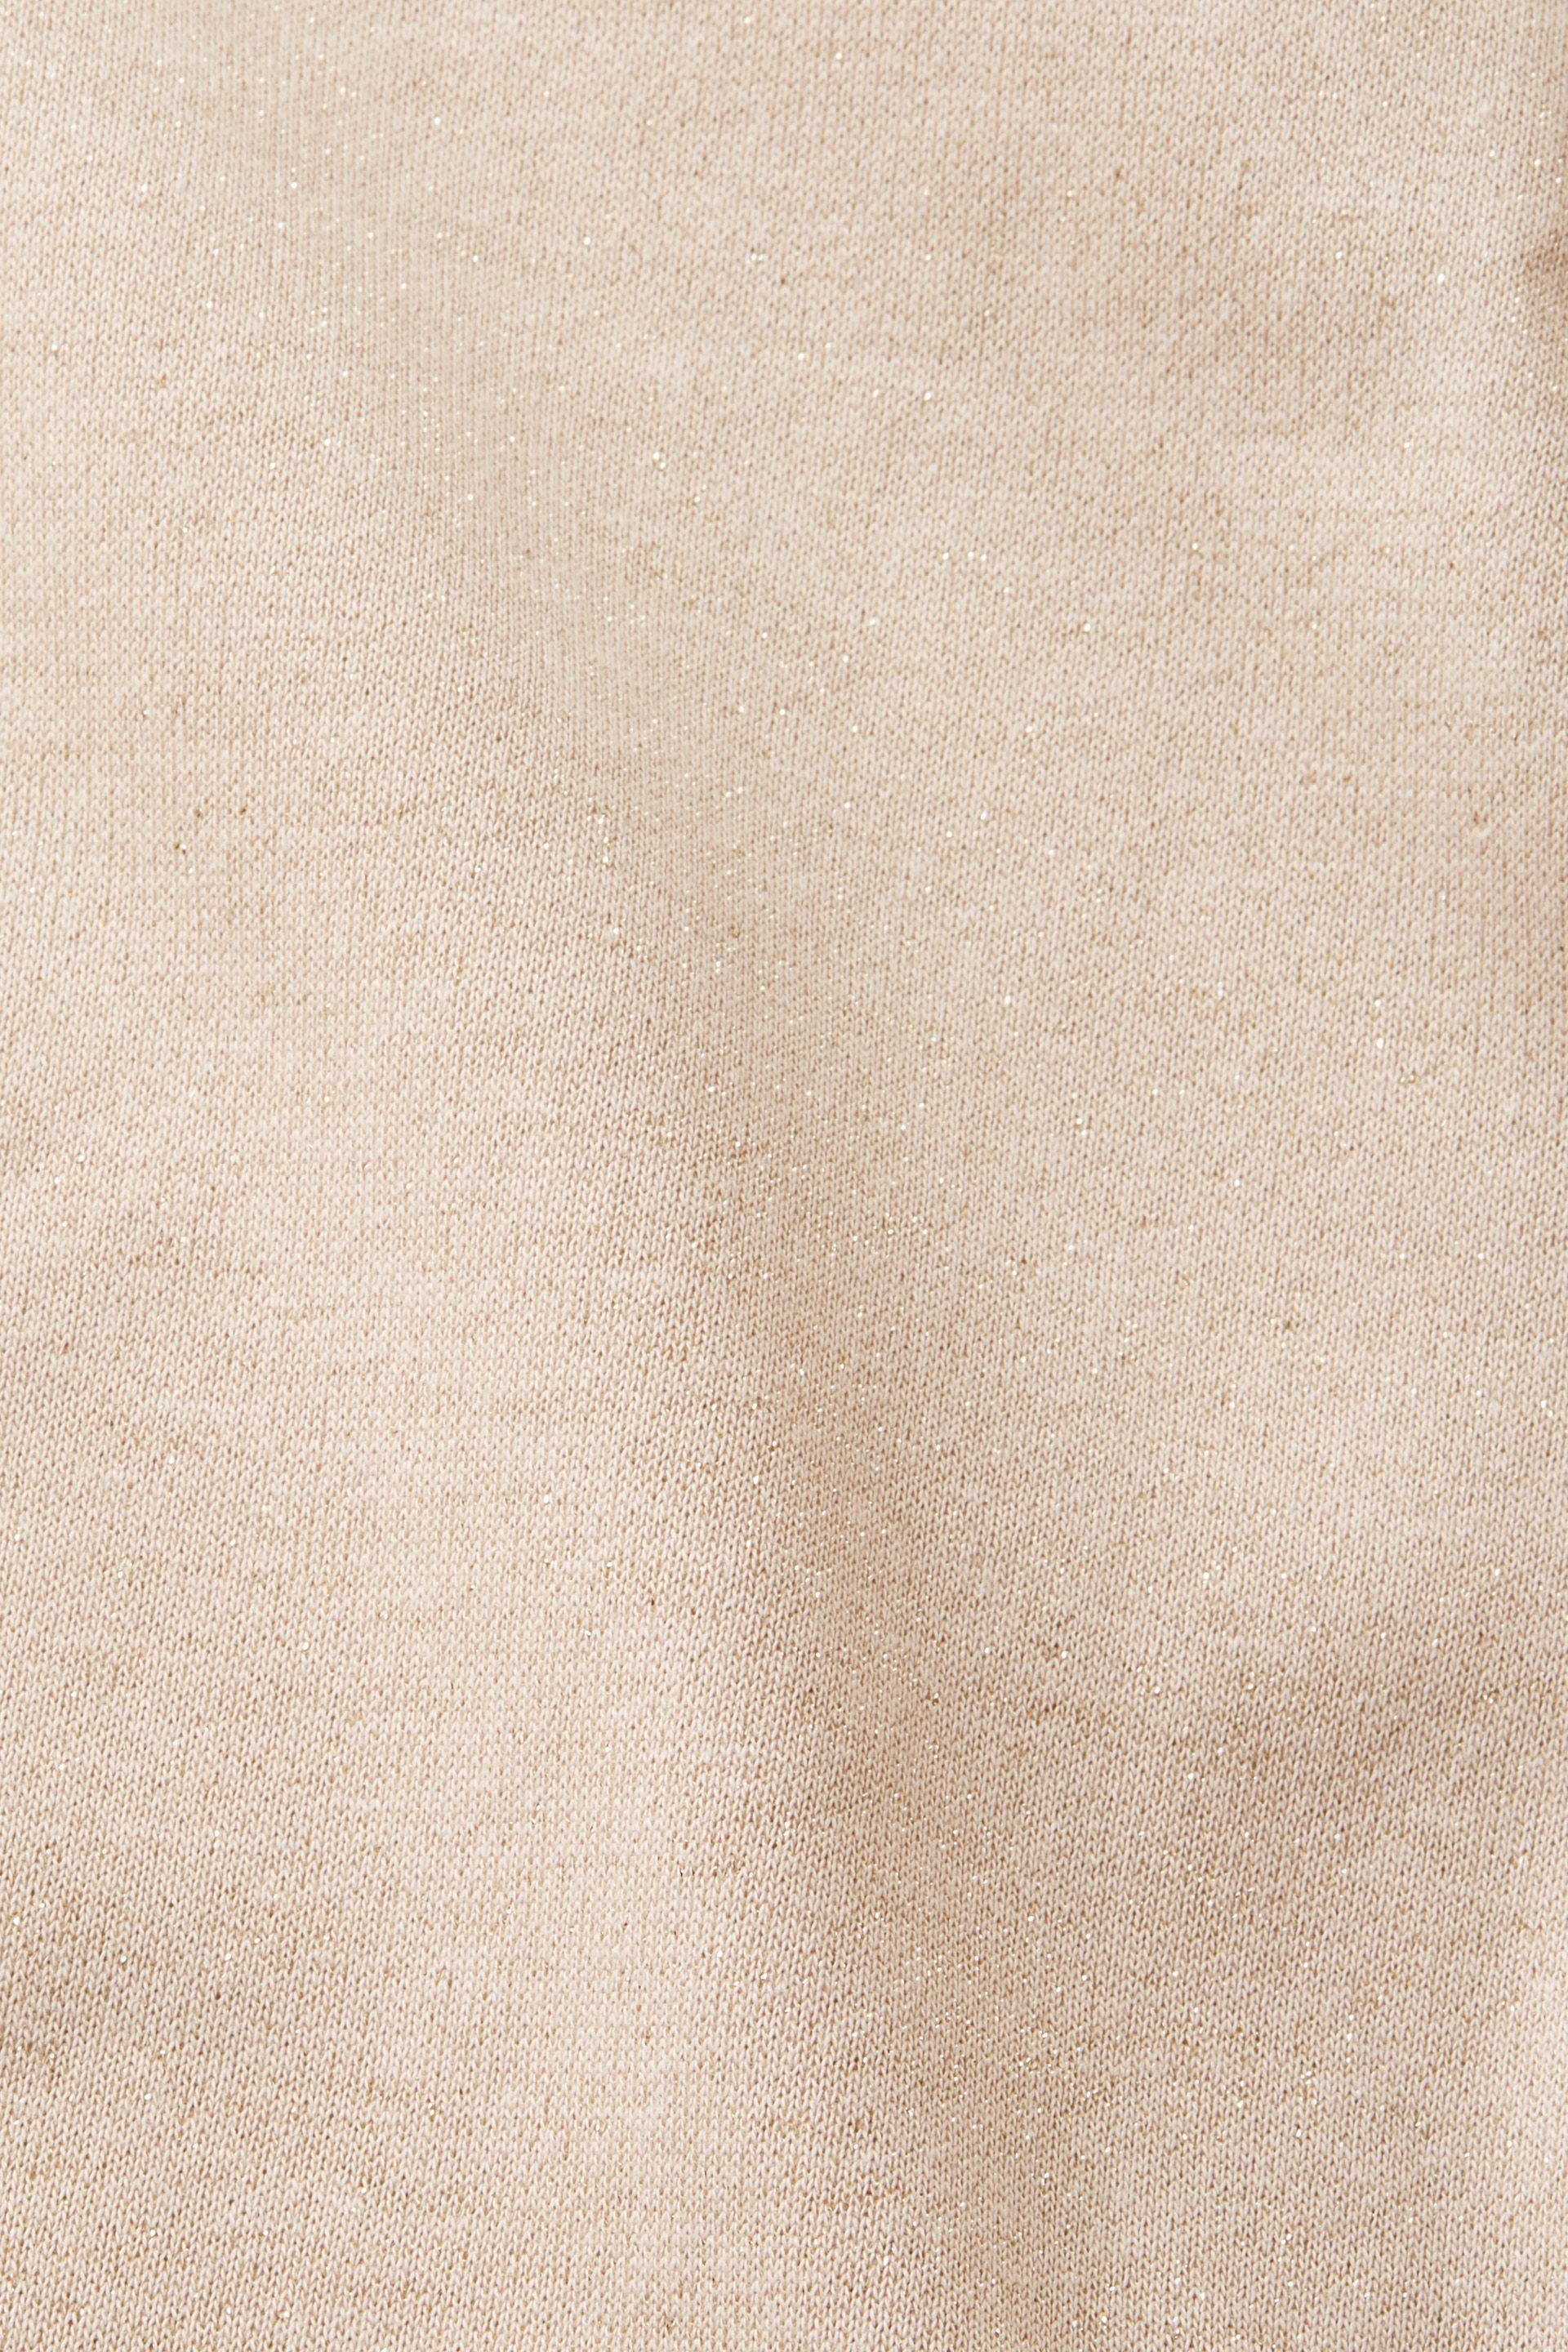 Esprit - Felpa oversize con effetto glitterato in misto cotone, Naturale, large image number 3